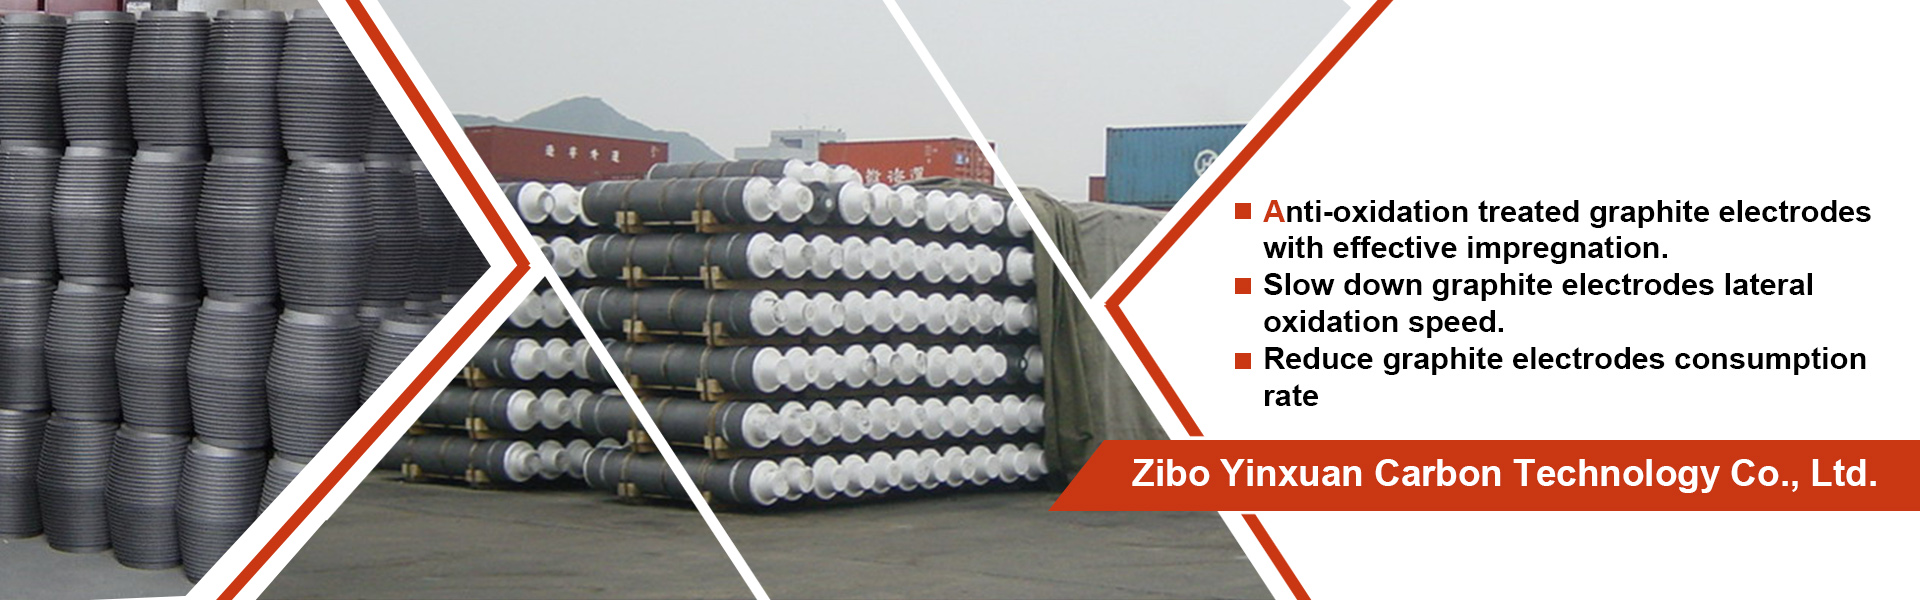 ラ フ ァ イ ト ، グ ラ ァ イ 部品 ، グ フ ァ イ,Zibo Yinxuan Carbon Technology Co.,Ltd